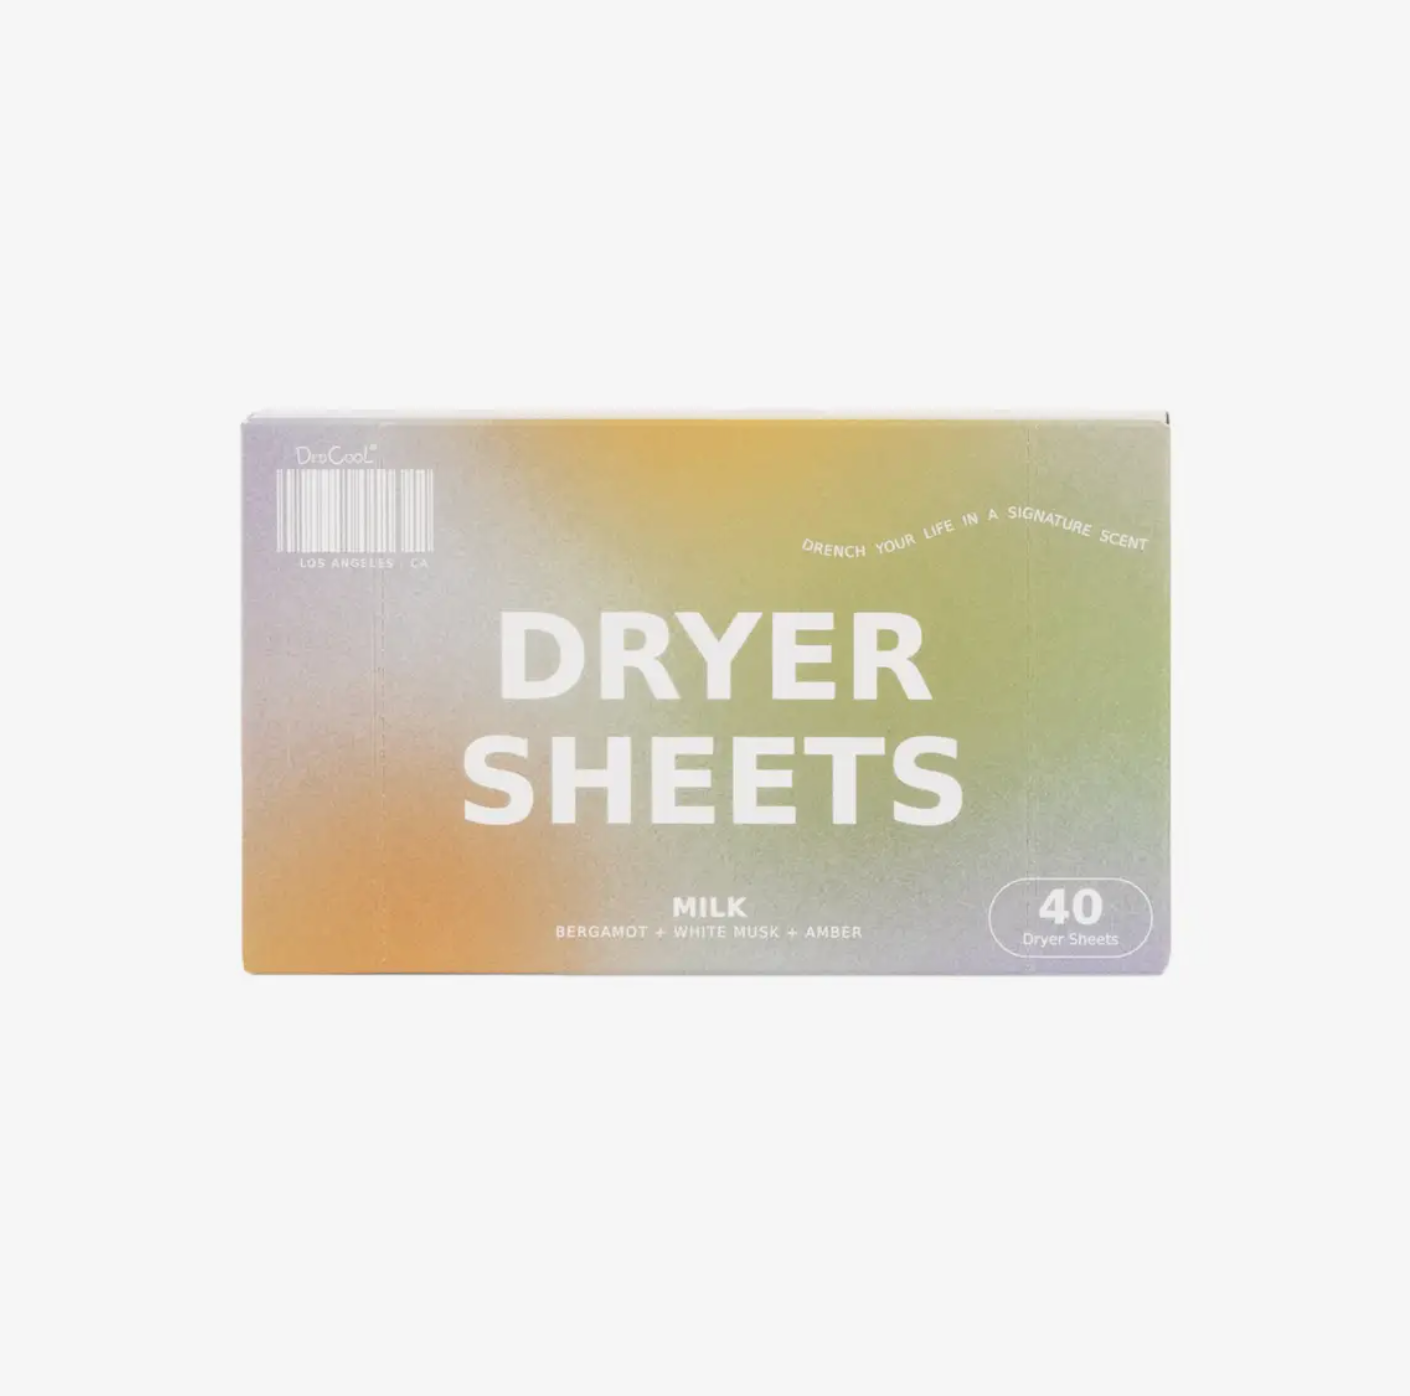 dedcool dryer sheets - milk